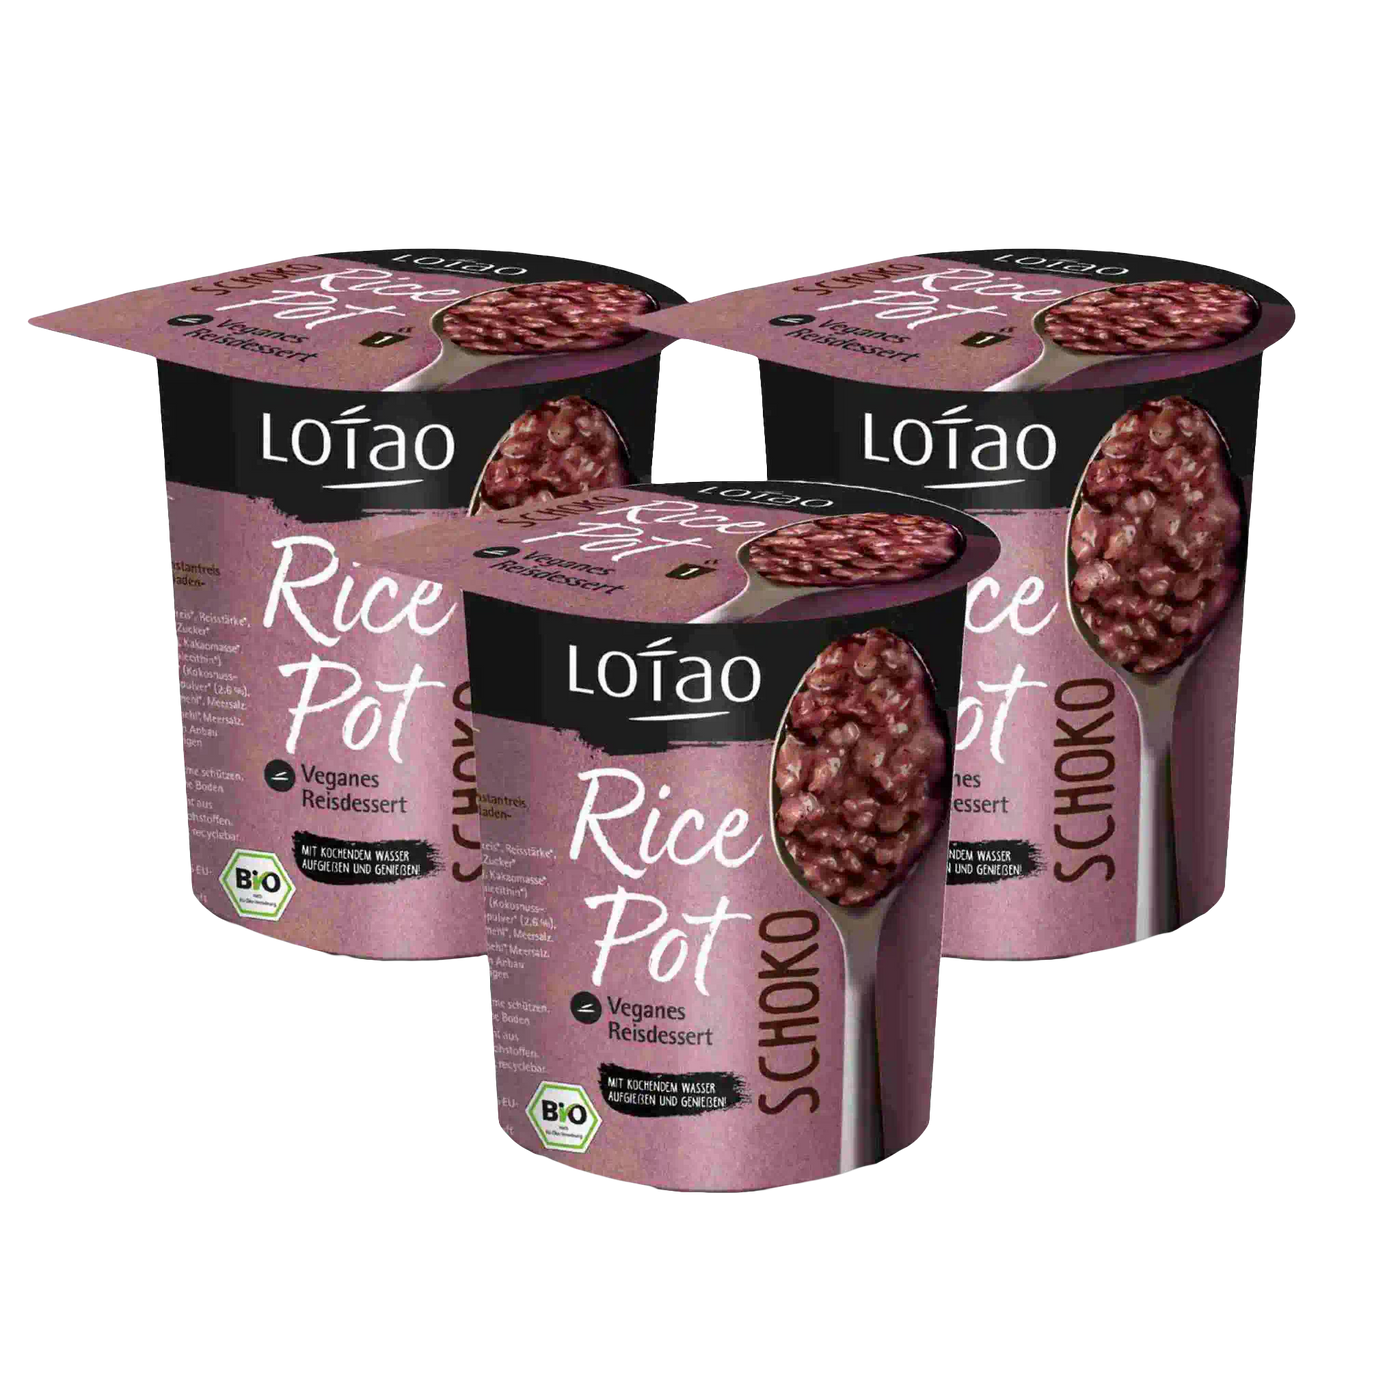 Lotao Rice Pot Schokolade 3er Set